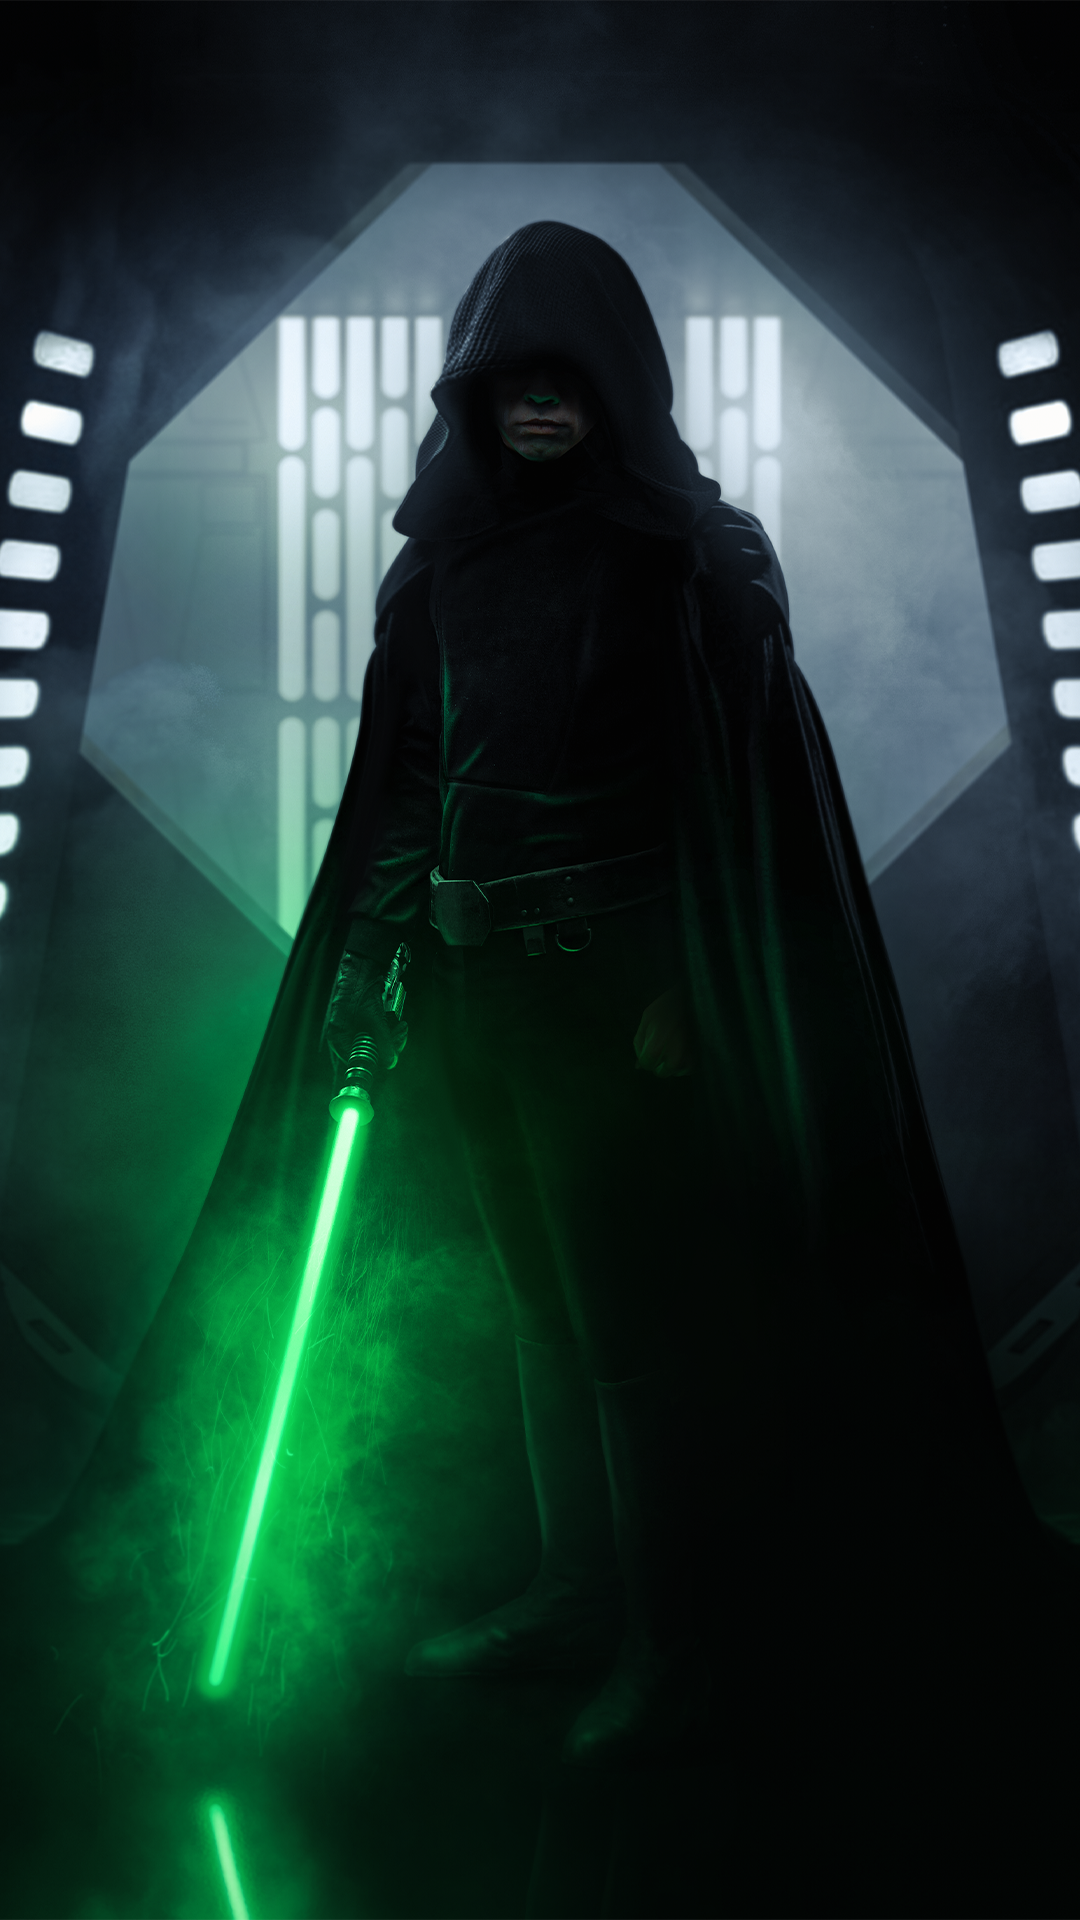 Luke Skywalker Wallpaper In Star Wars Image